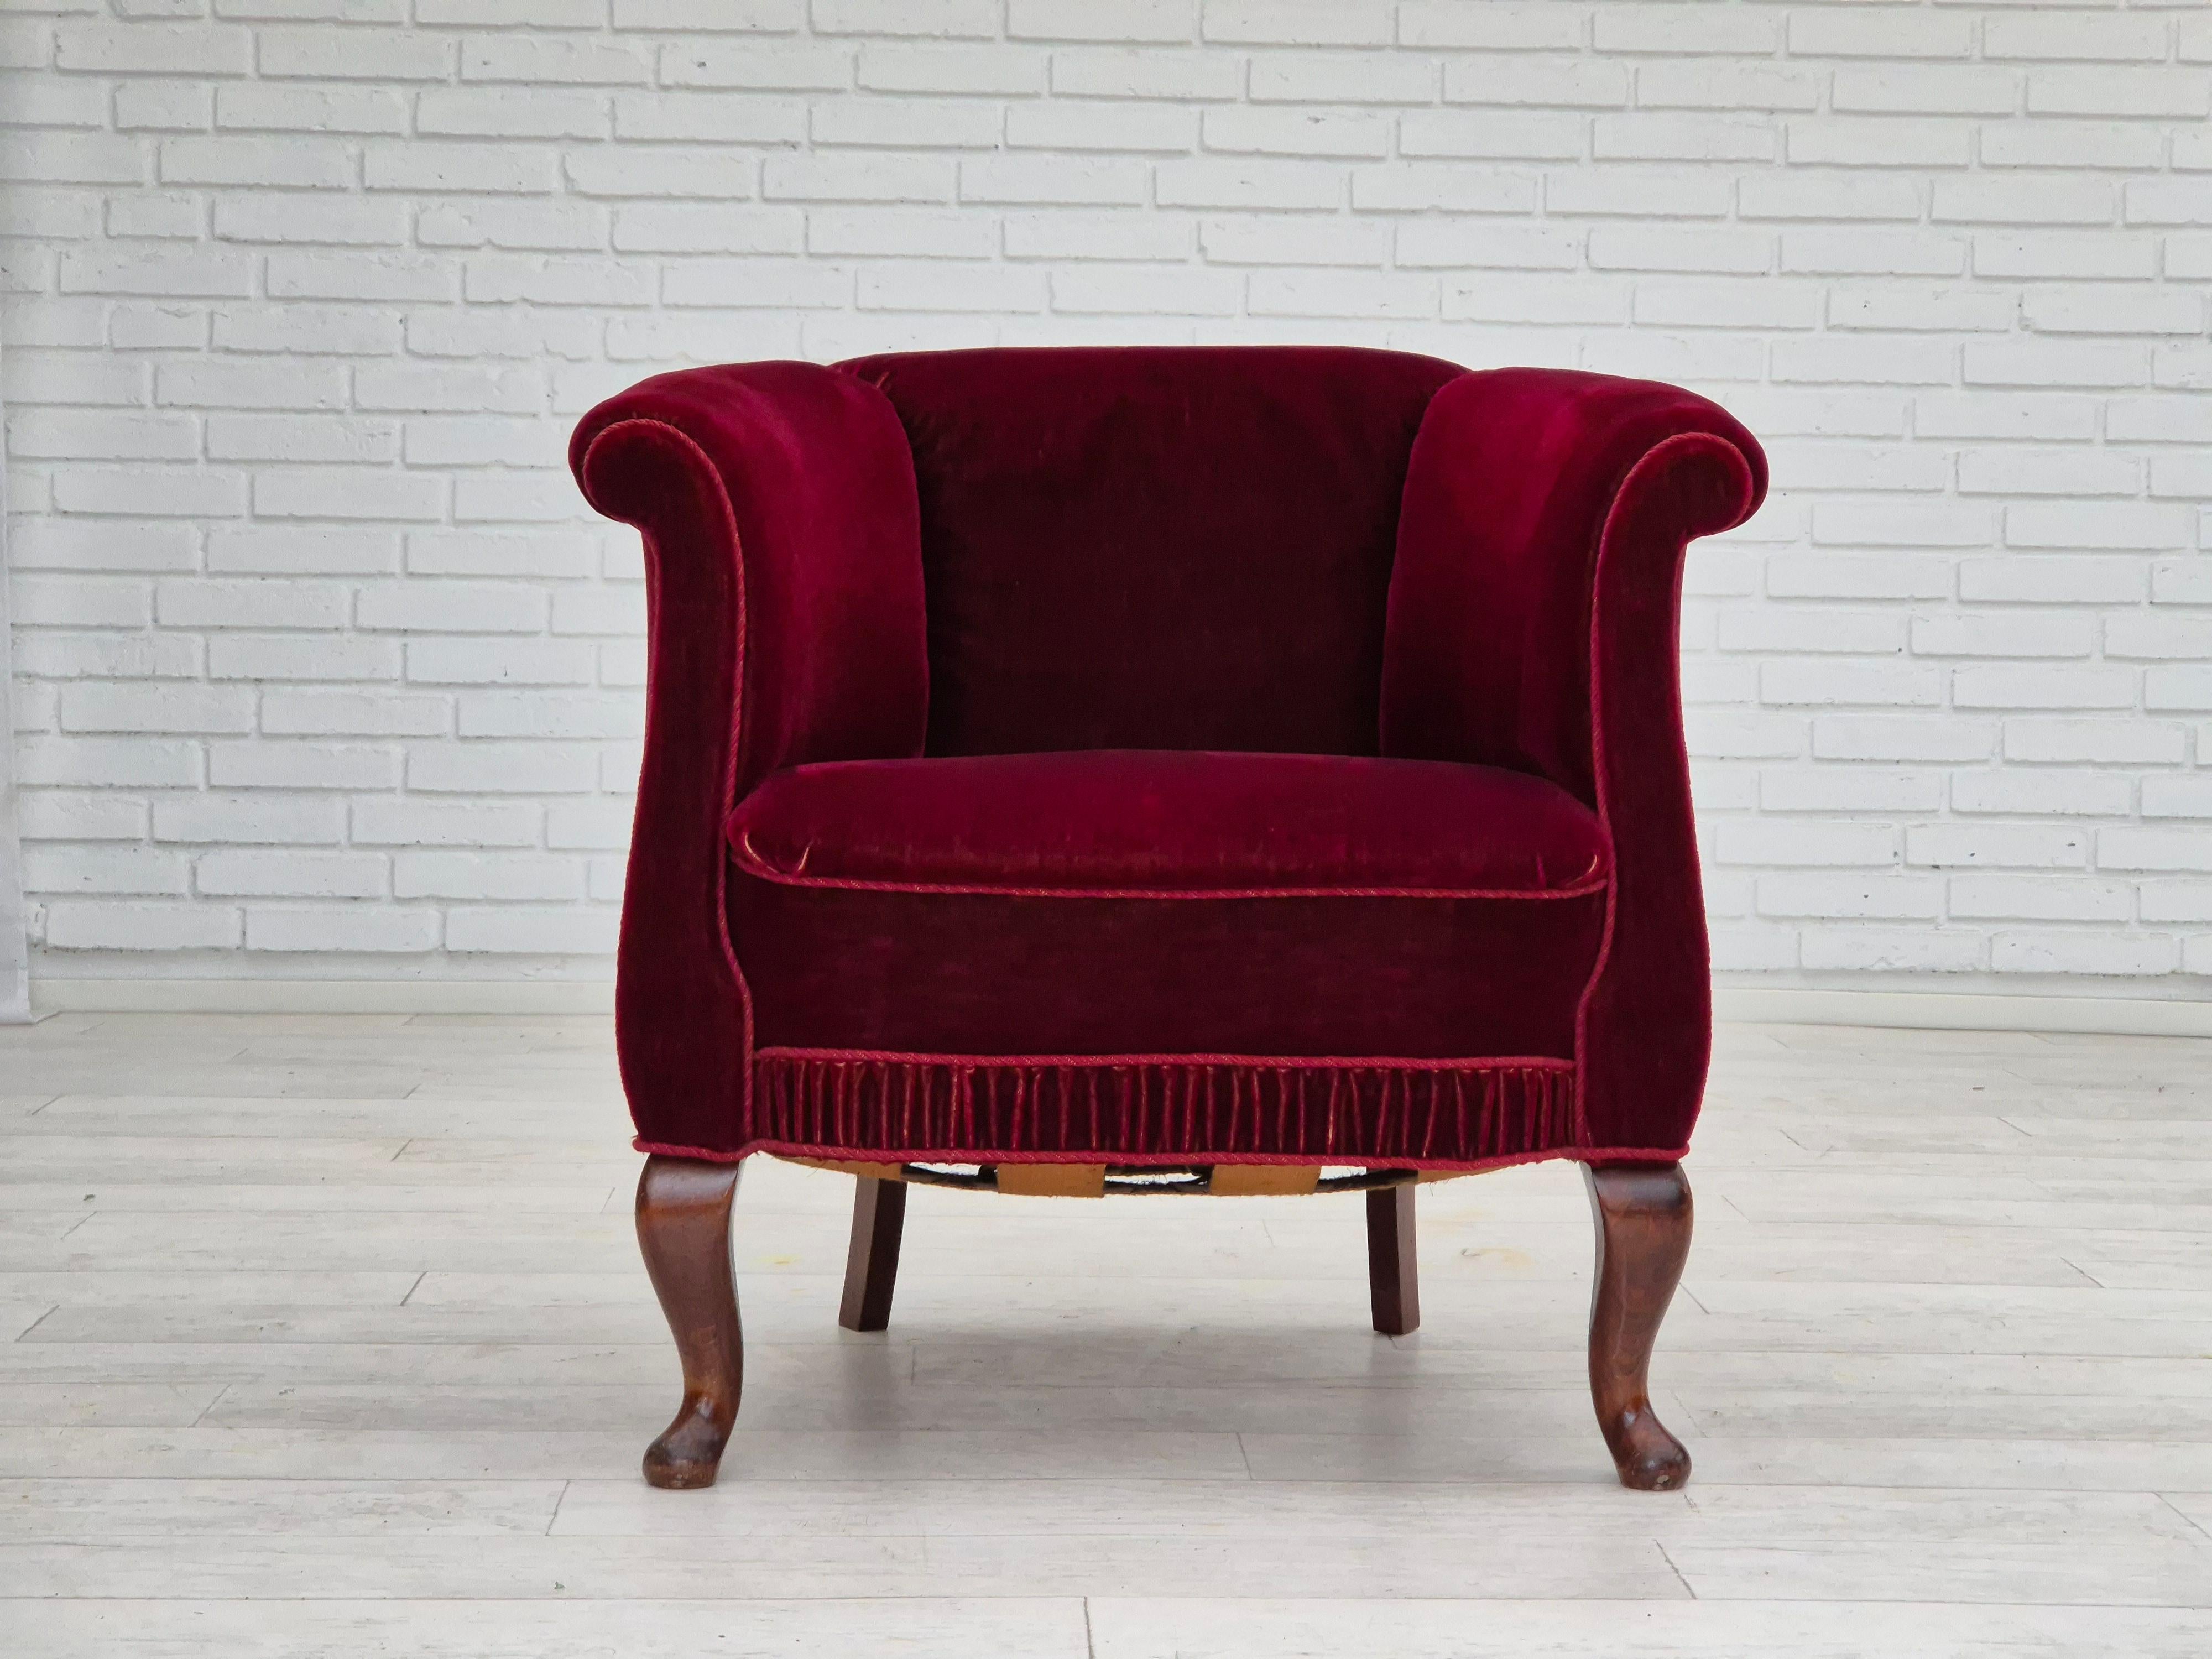 Chaise longue danoise des années 1960 en velours d'ameublement rouge cerise. Très bon état d'origine : pas d'odeurs ni de taches. Pieds en bois de Beeche, ressorts en laiton dans l'assise. Fabriqué par un fabricant de meubles danois dans les années